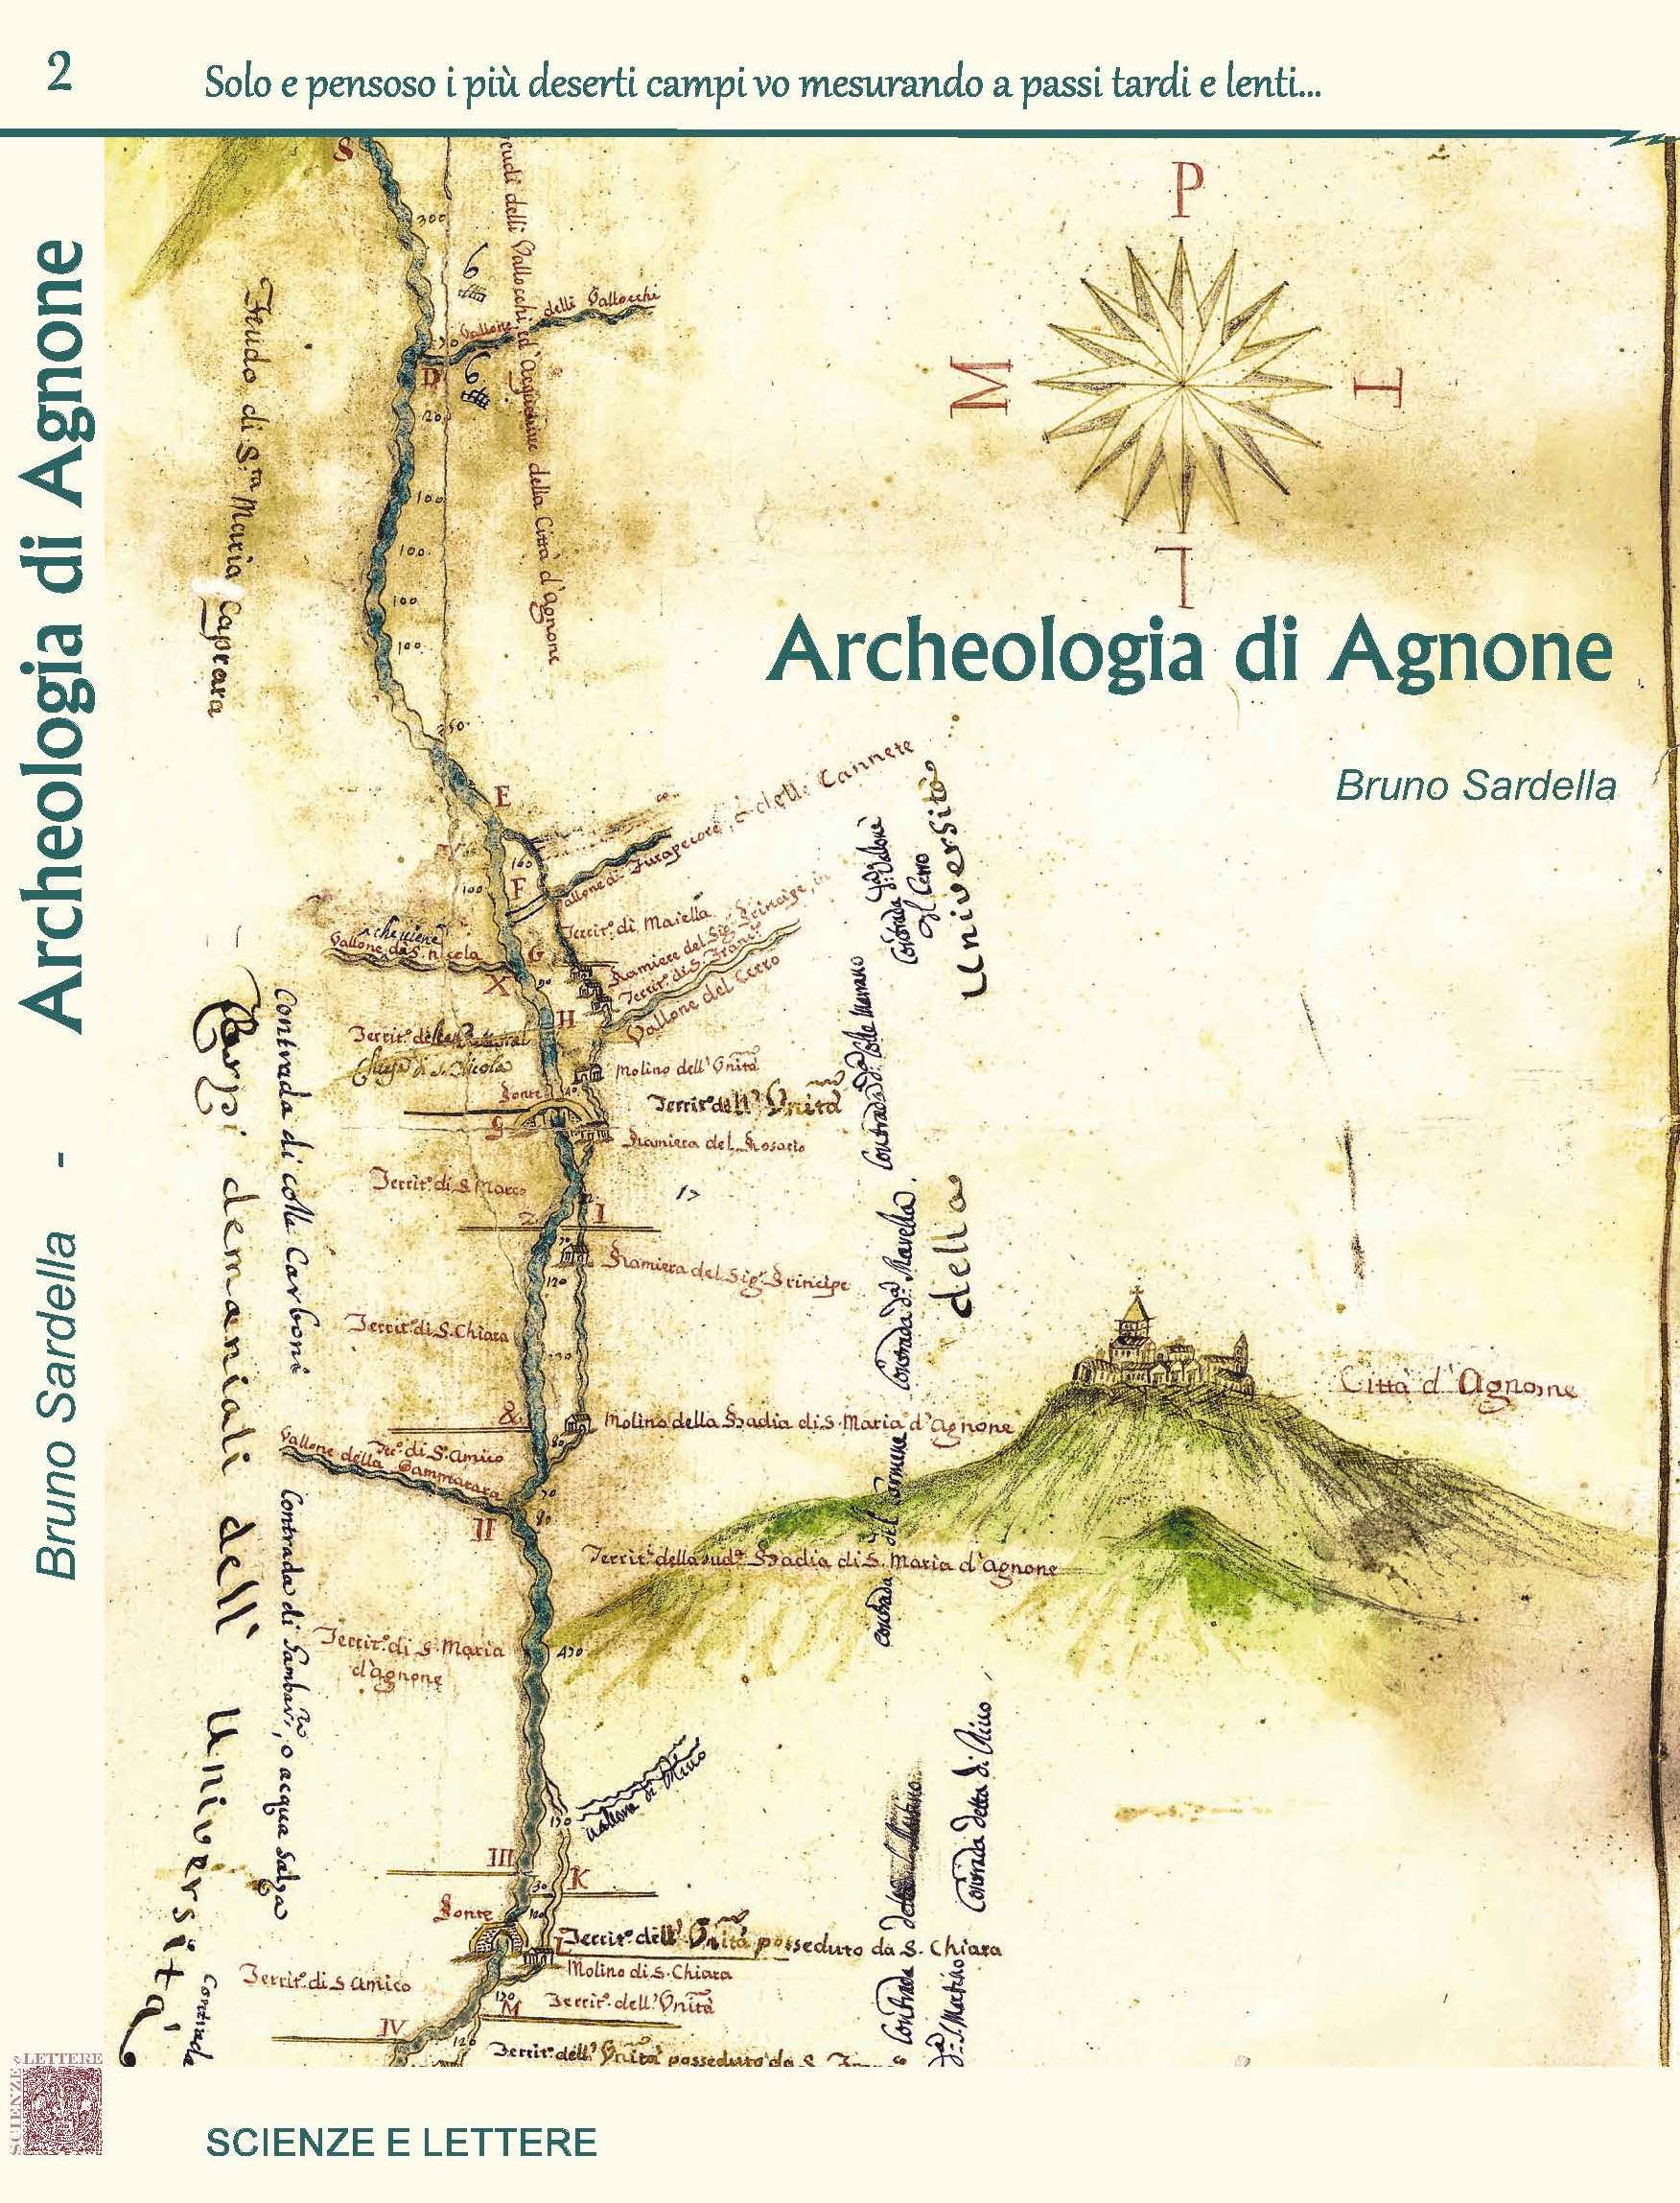 Archeologia di Agnone - Solo e pensoso i più deserti campi vo mesurando a passi tardi e lenti…2 